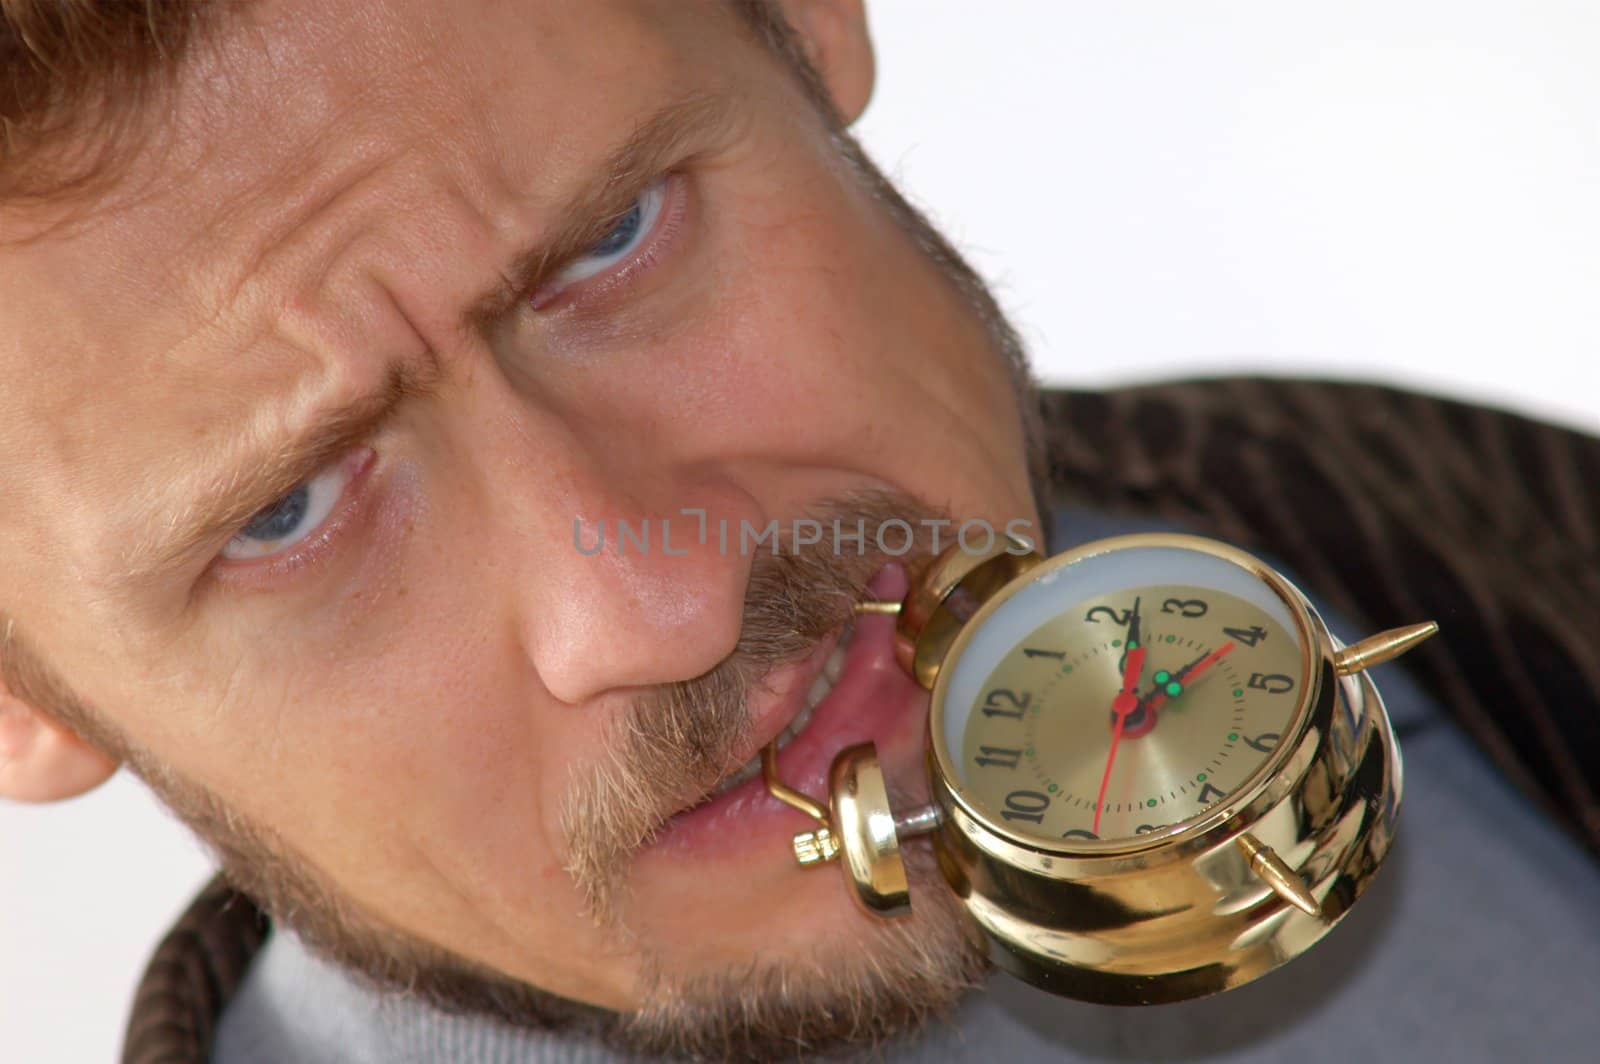 A man keeping an alarm clock in his teeth